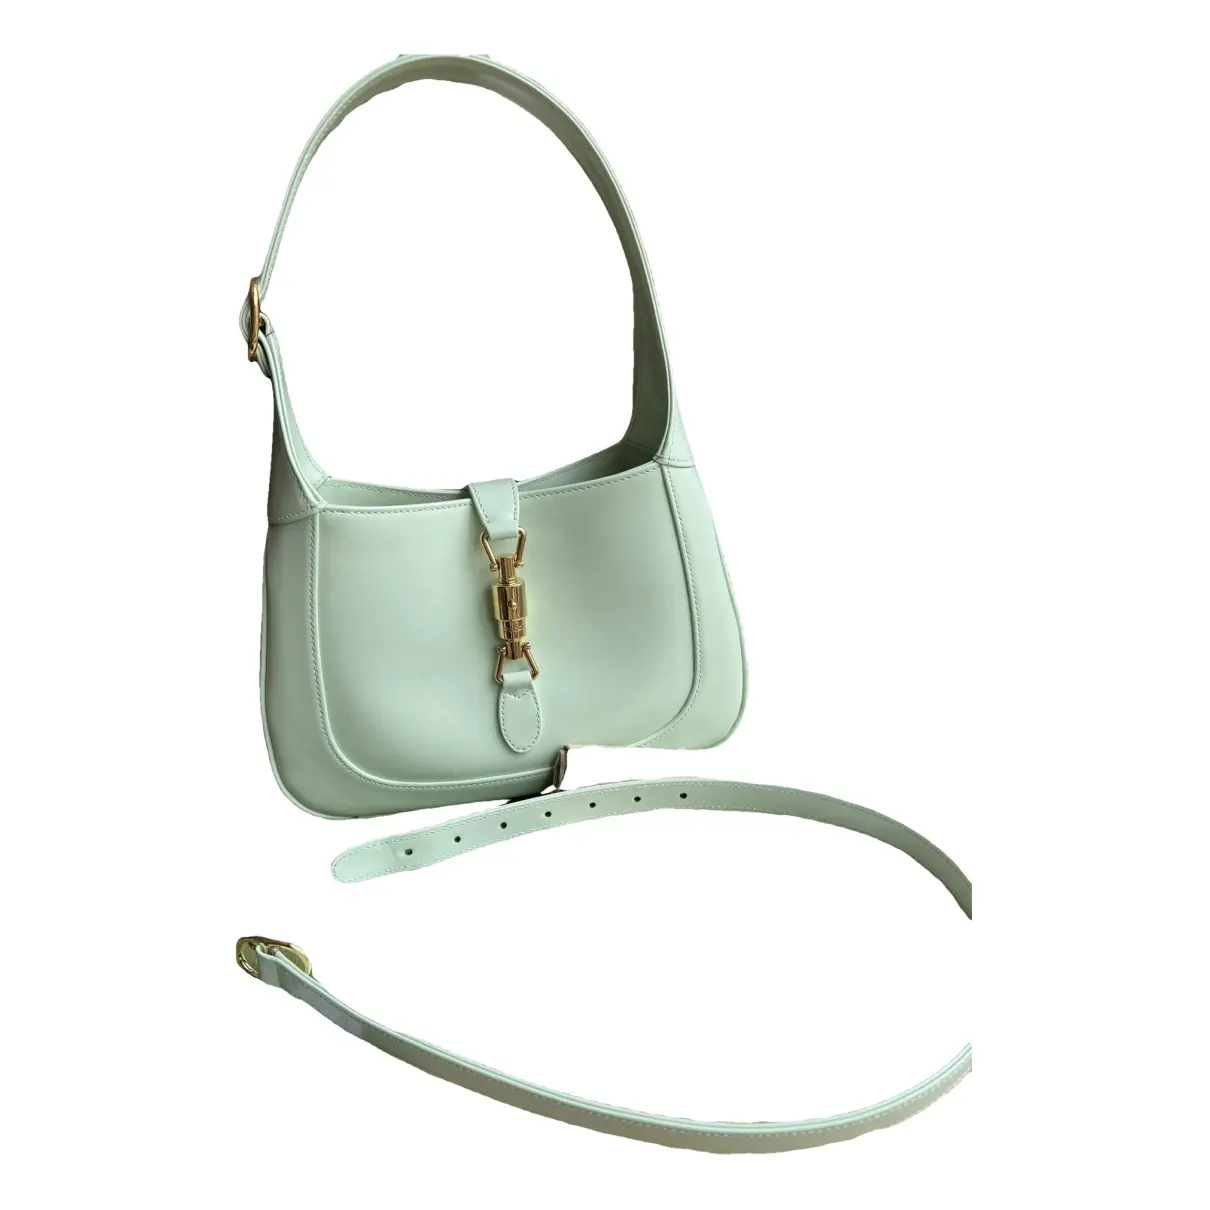 Jackie 1961 leather handbag